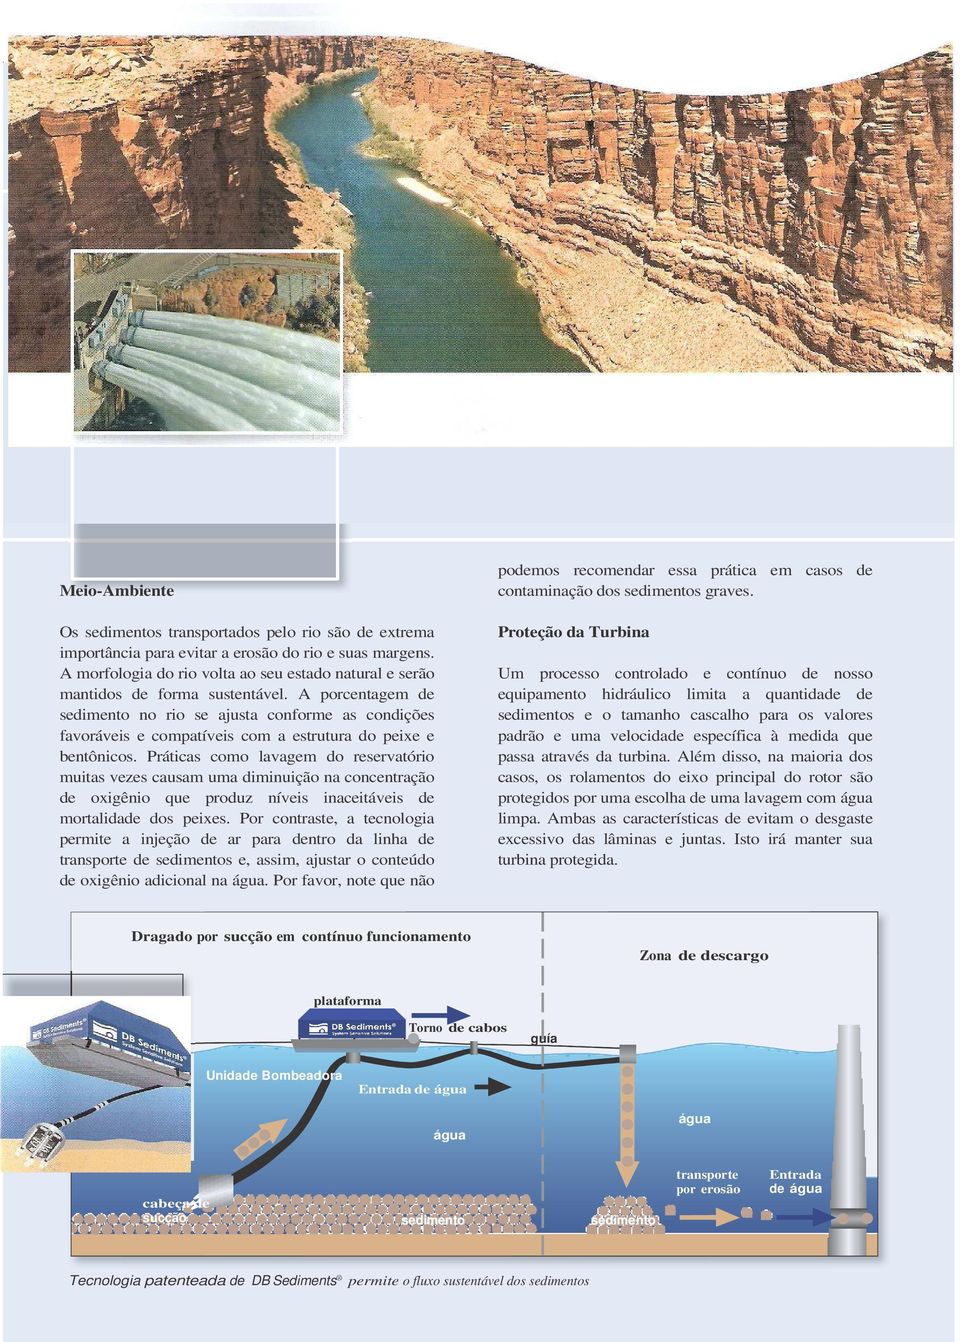 A porcentagem de sedimento no rio se ajusta conforme as condições favoráveis e compatíveis com a estrutura do peixe e bentônicos.